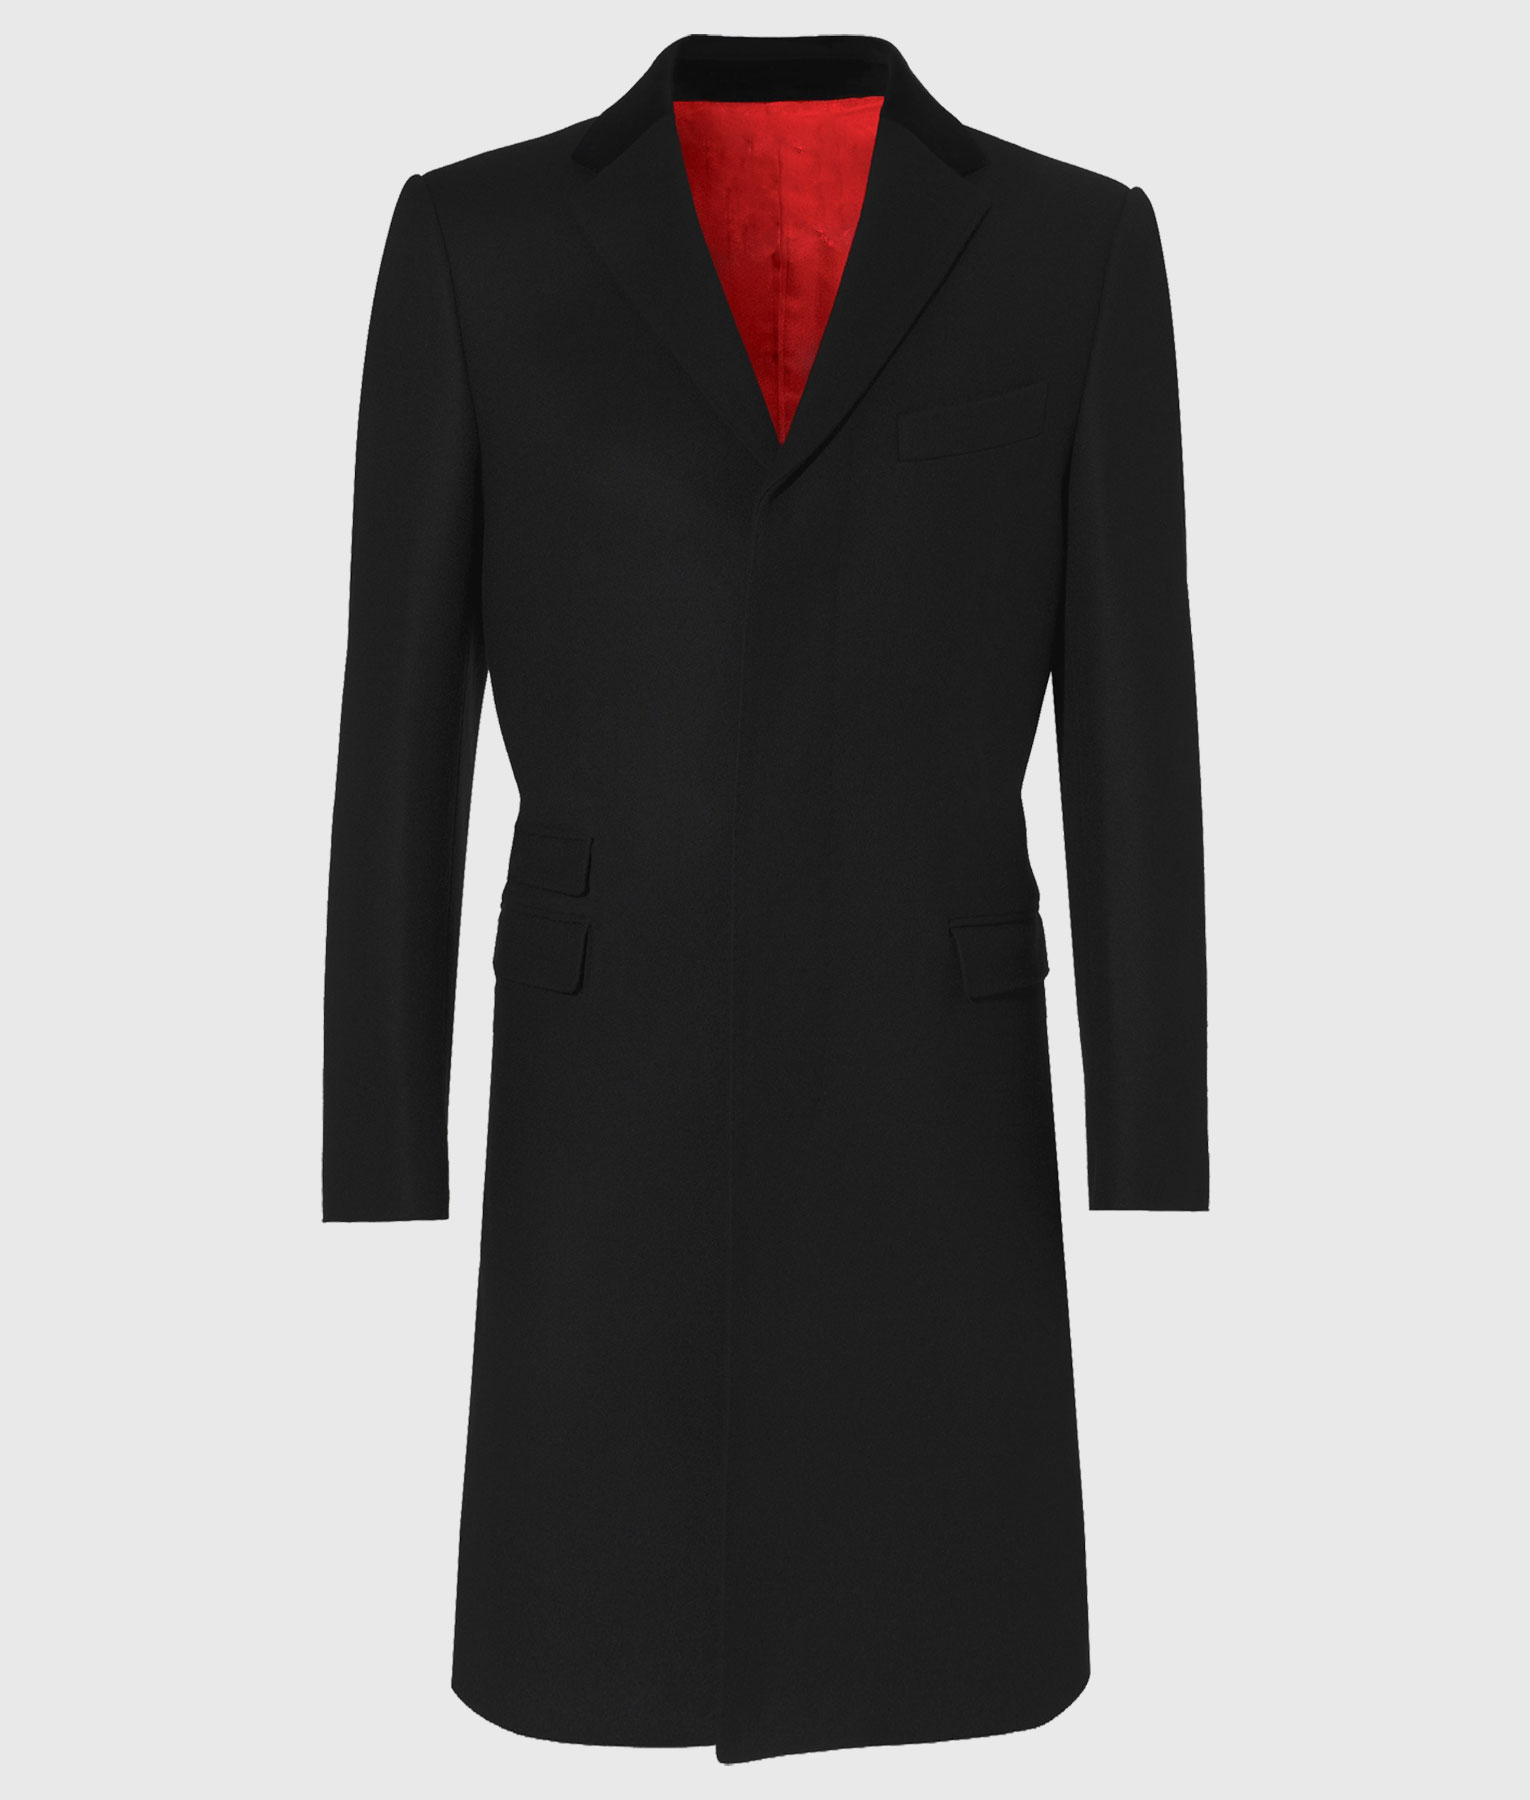 Suits Gabriel Macht Black Coat (3)